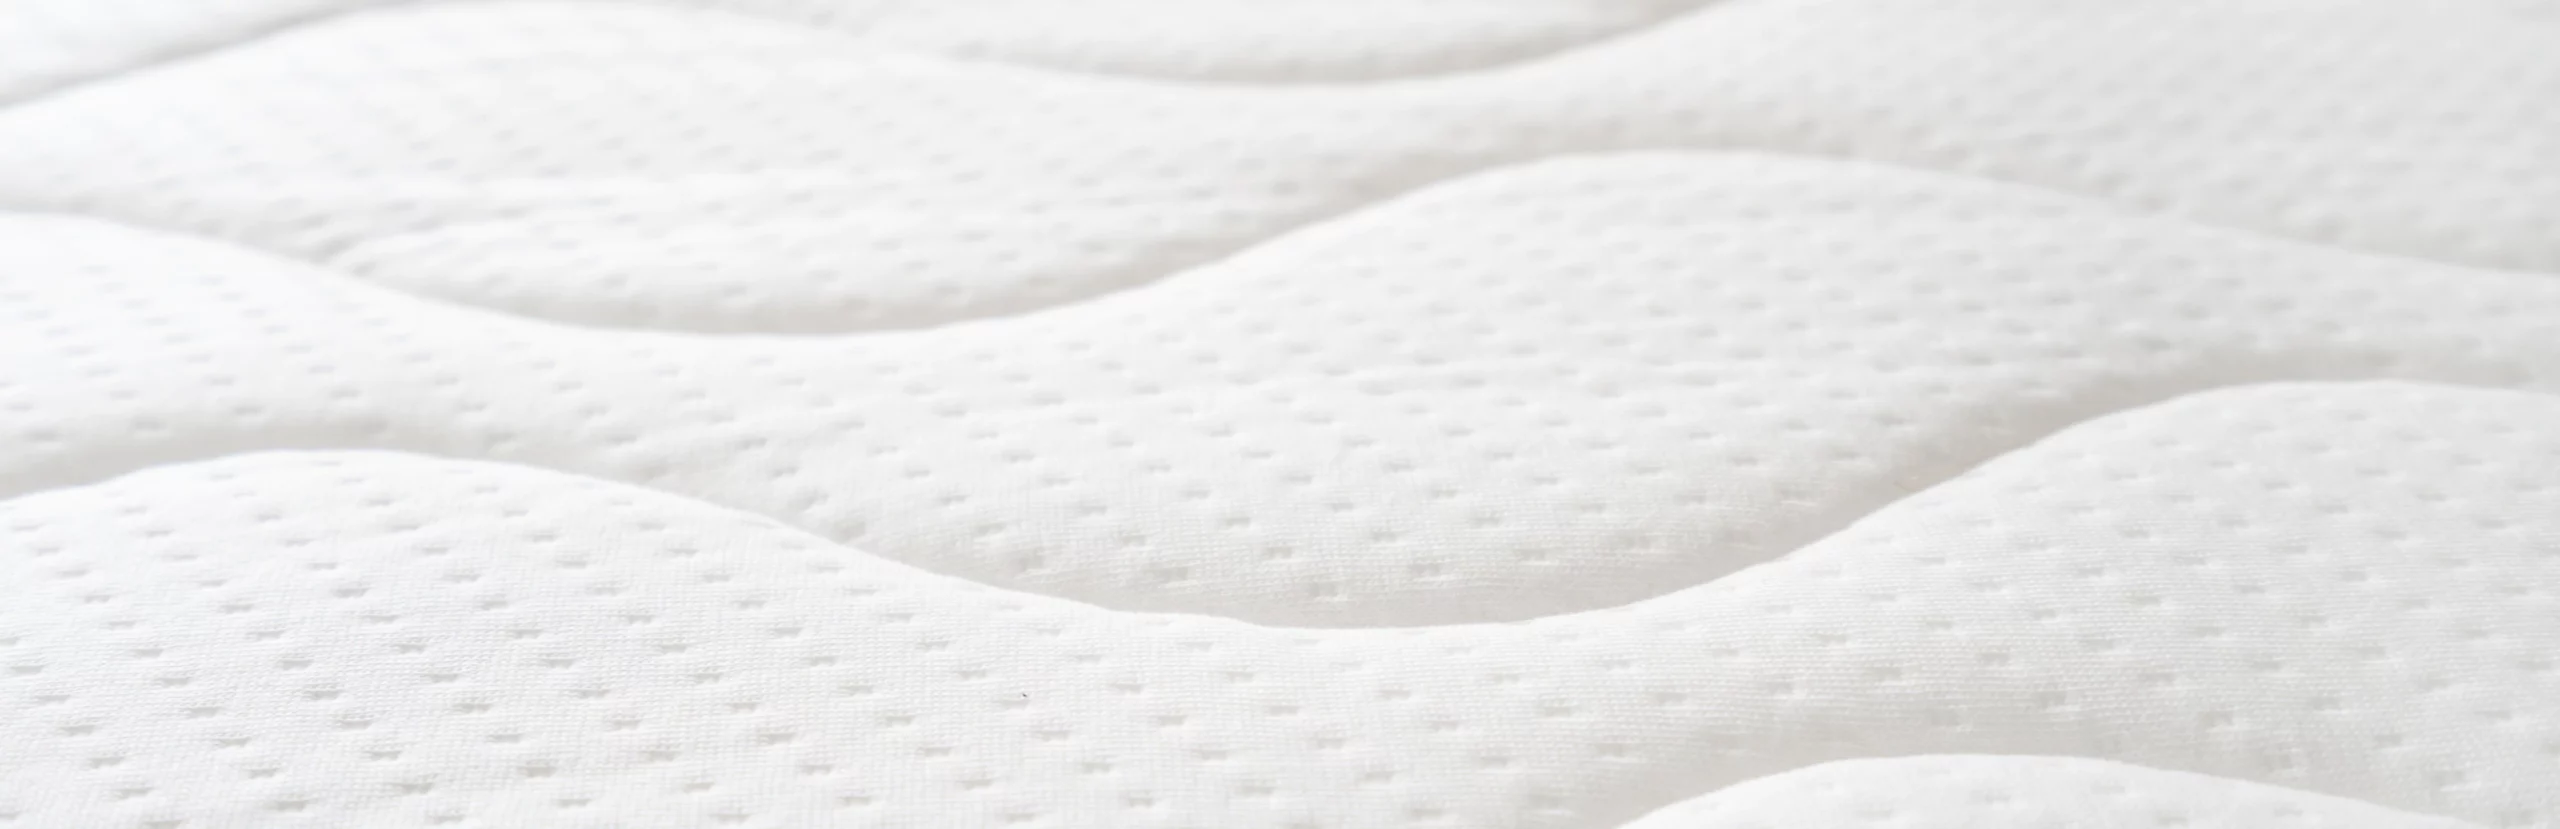 close up view of mattress